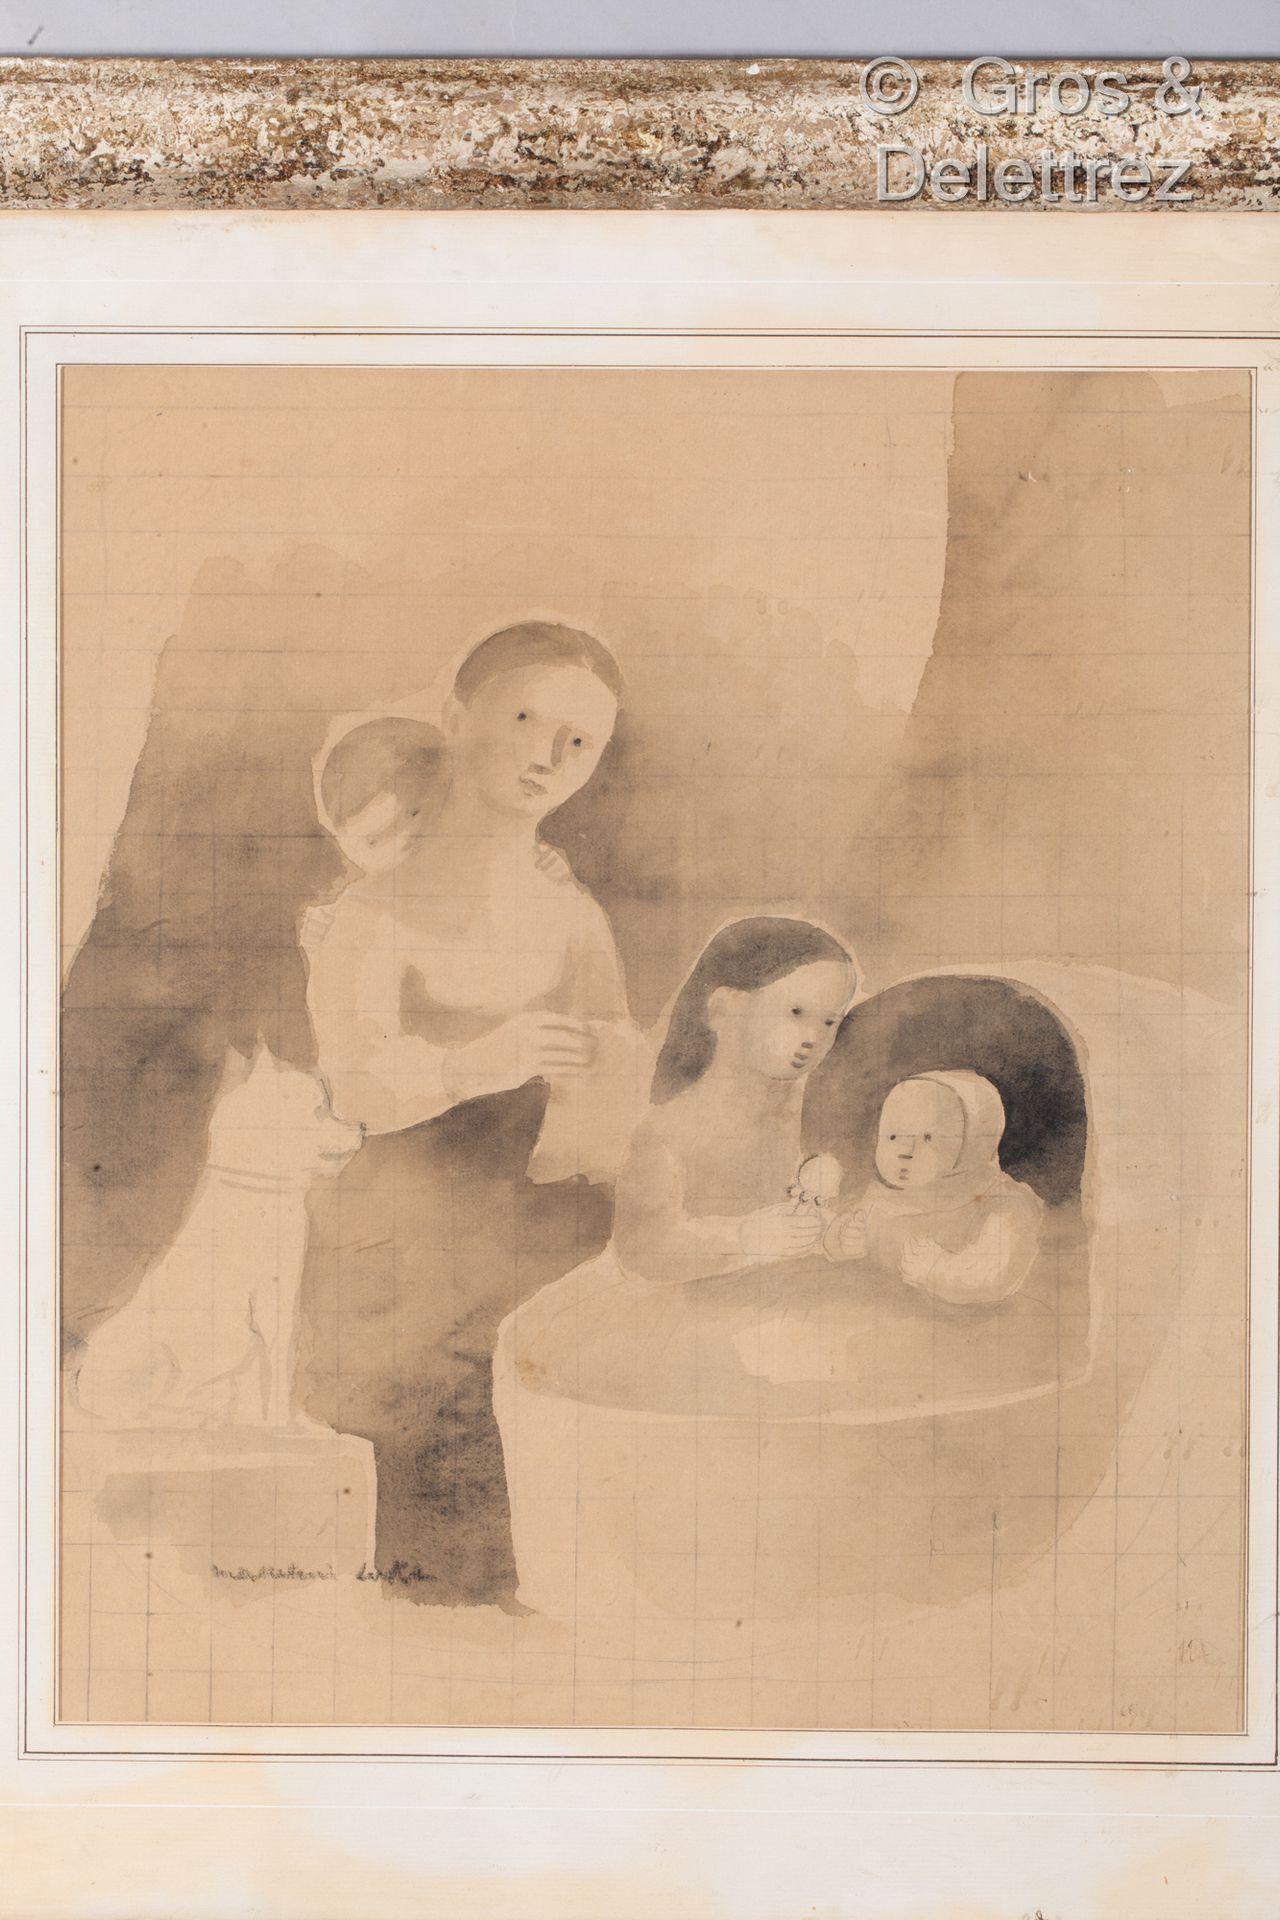 Null (E) 马德琳-卢卡(1894-1989)

家庭和新生儿

铅笔和水墨

左下方有签名

瓷砖

45 x 39 cm (正在展出)